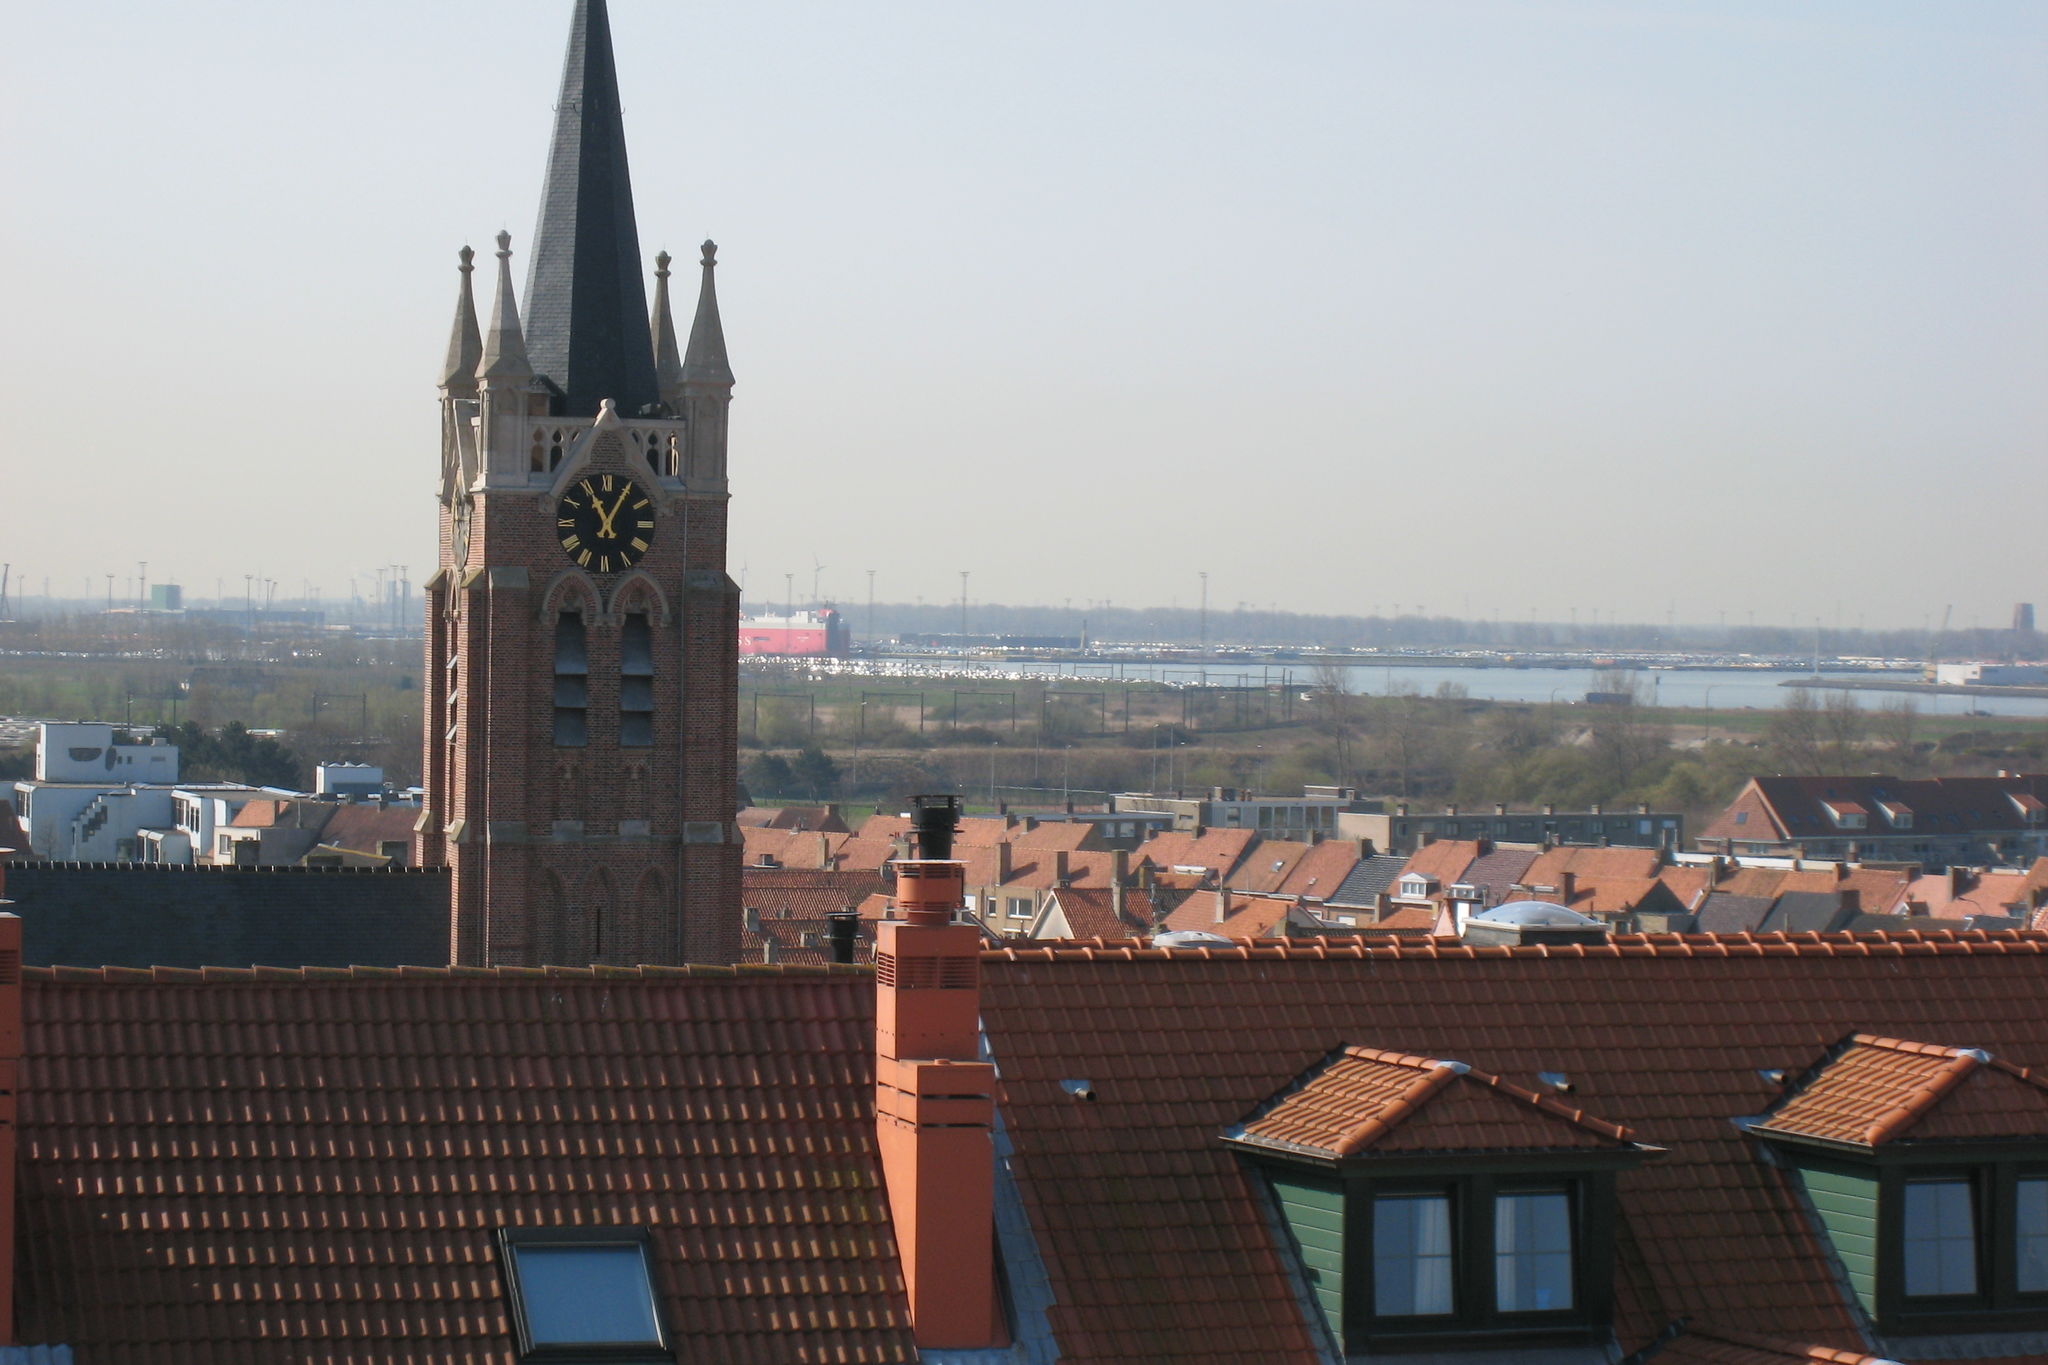 Sfeervol appartement met balkon op 100m afstand van zee te Knokke-Heist